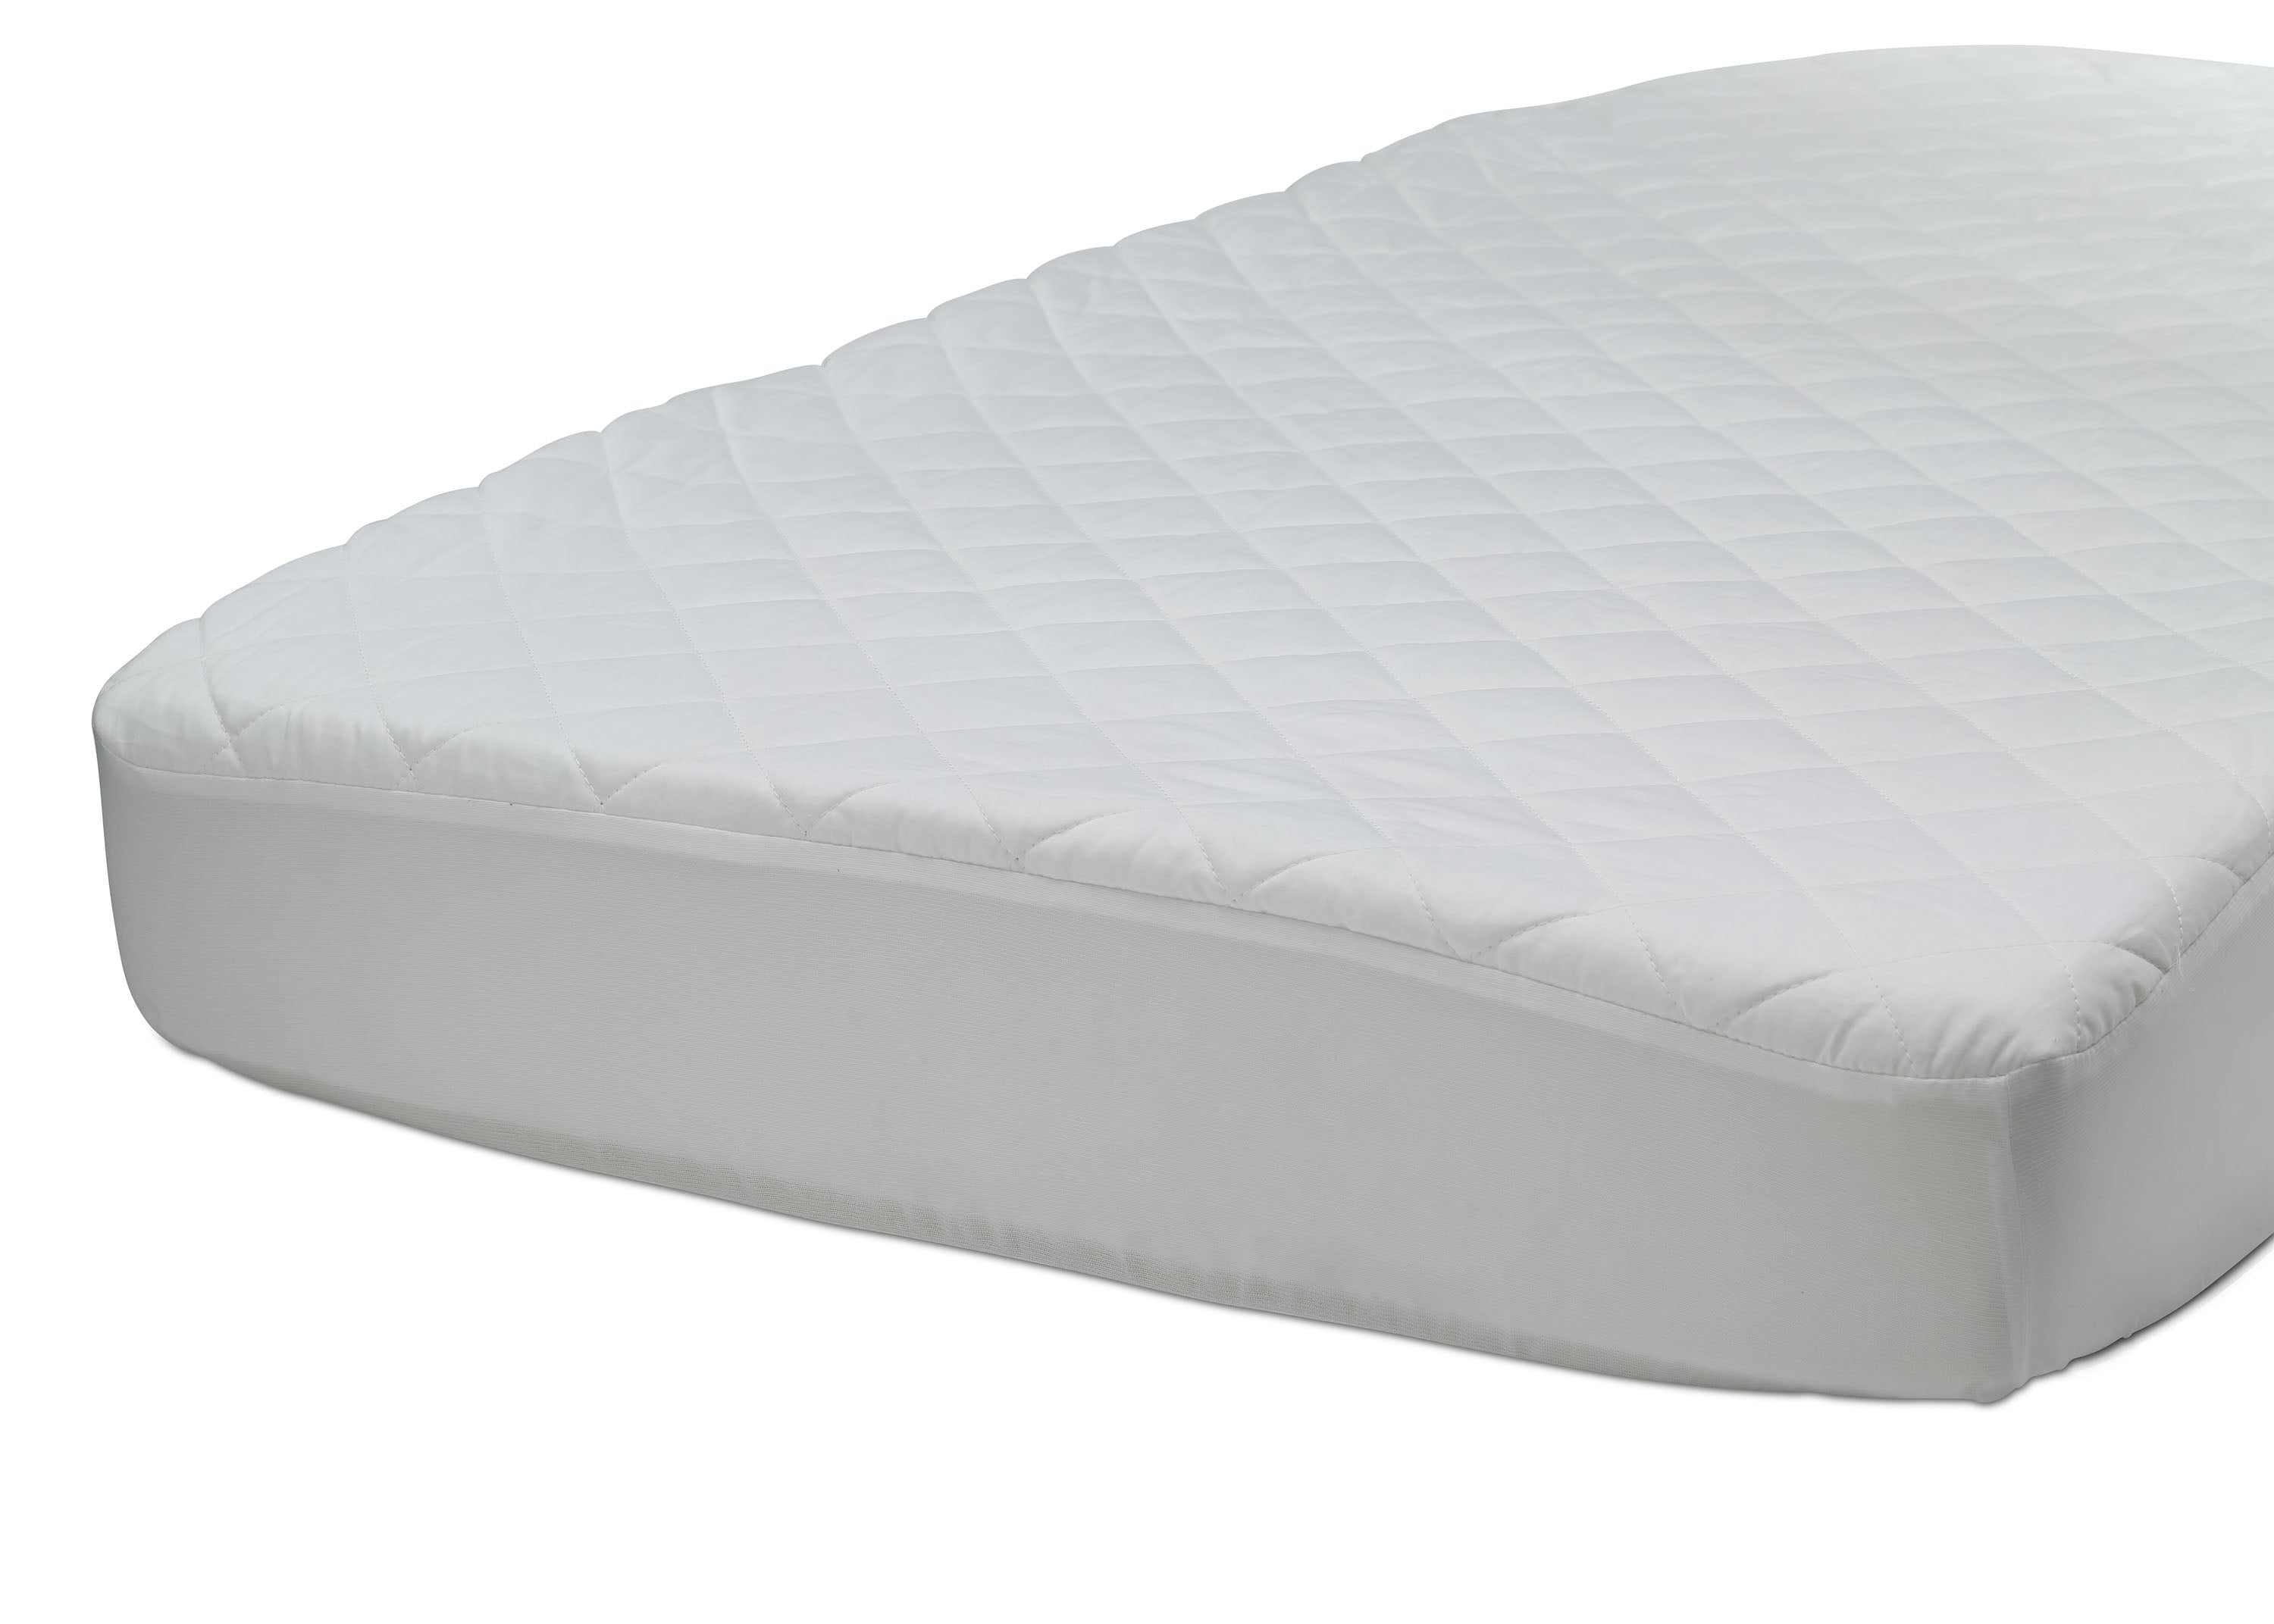 e luxury mattress pad